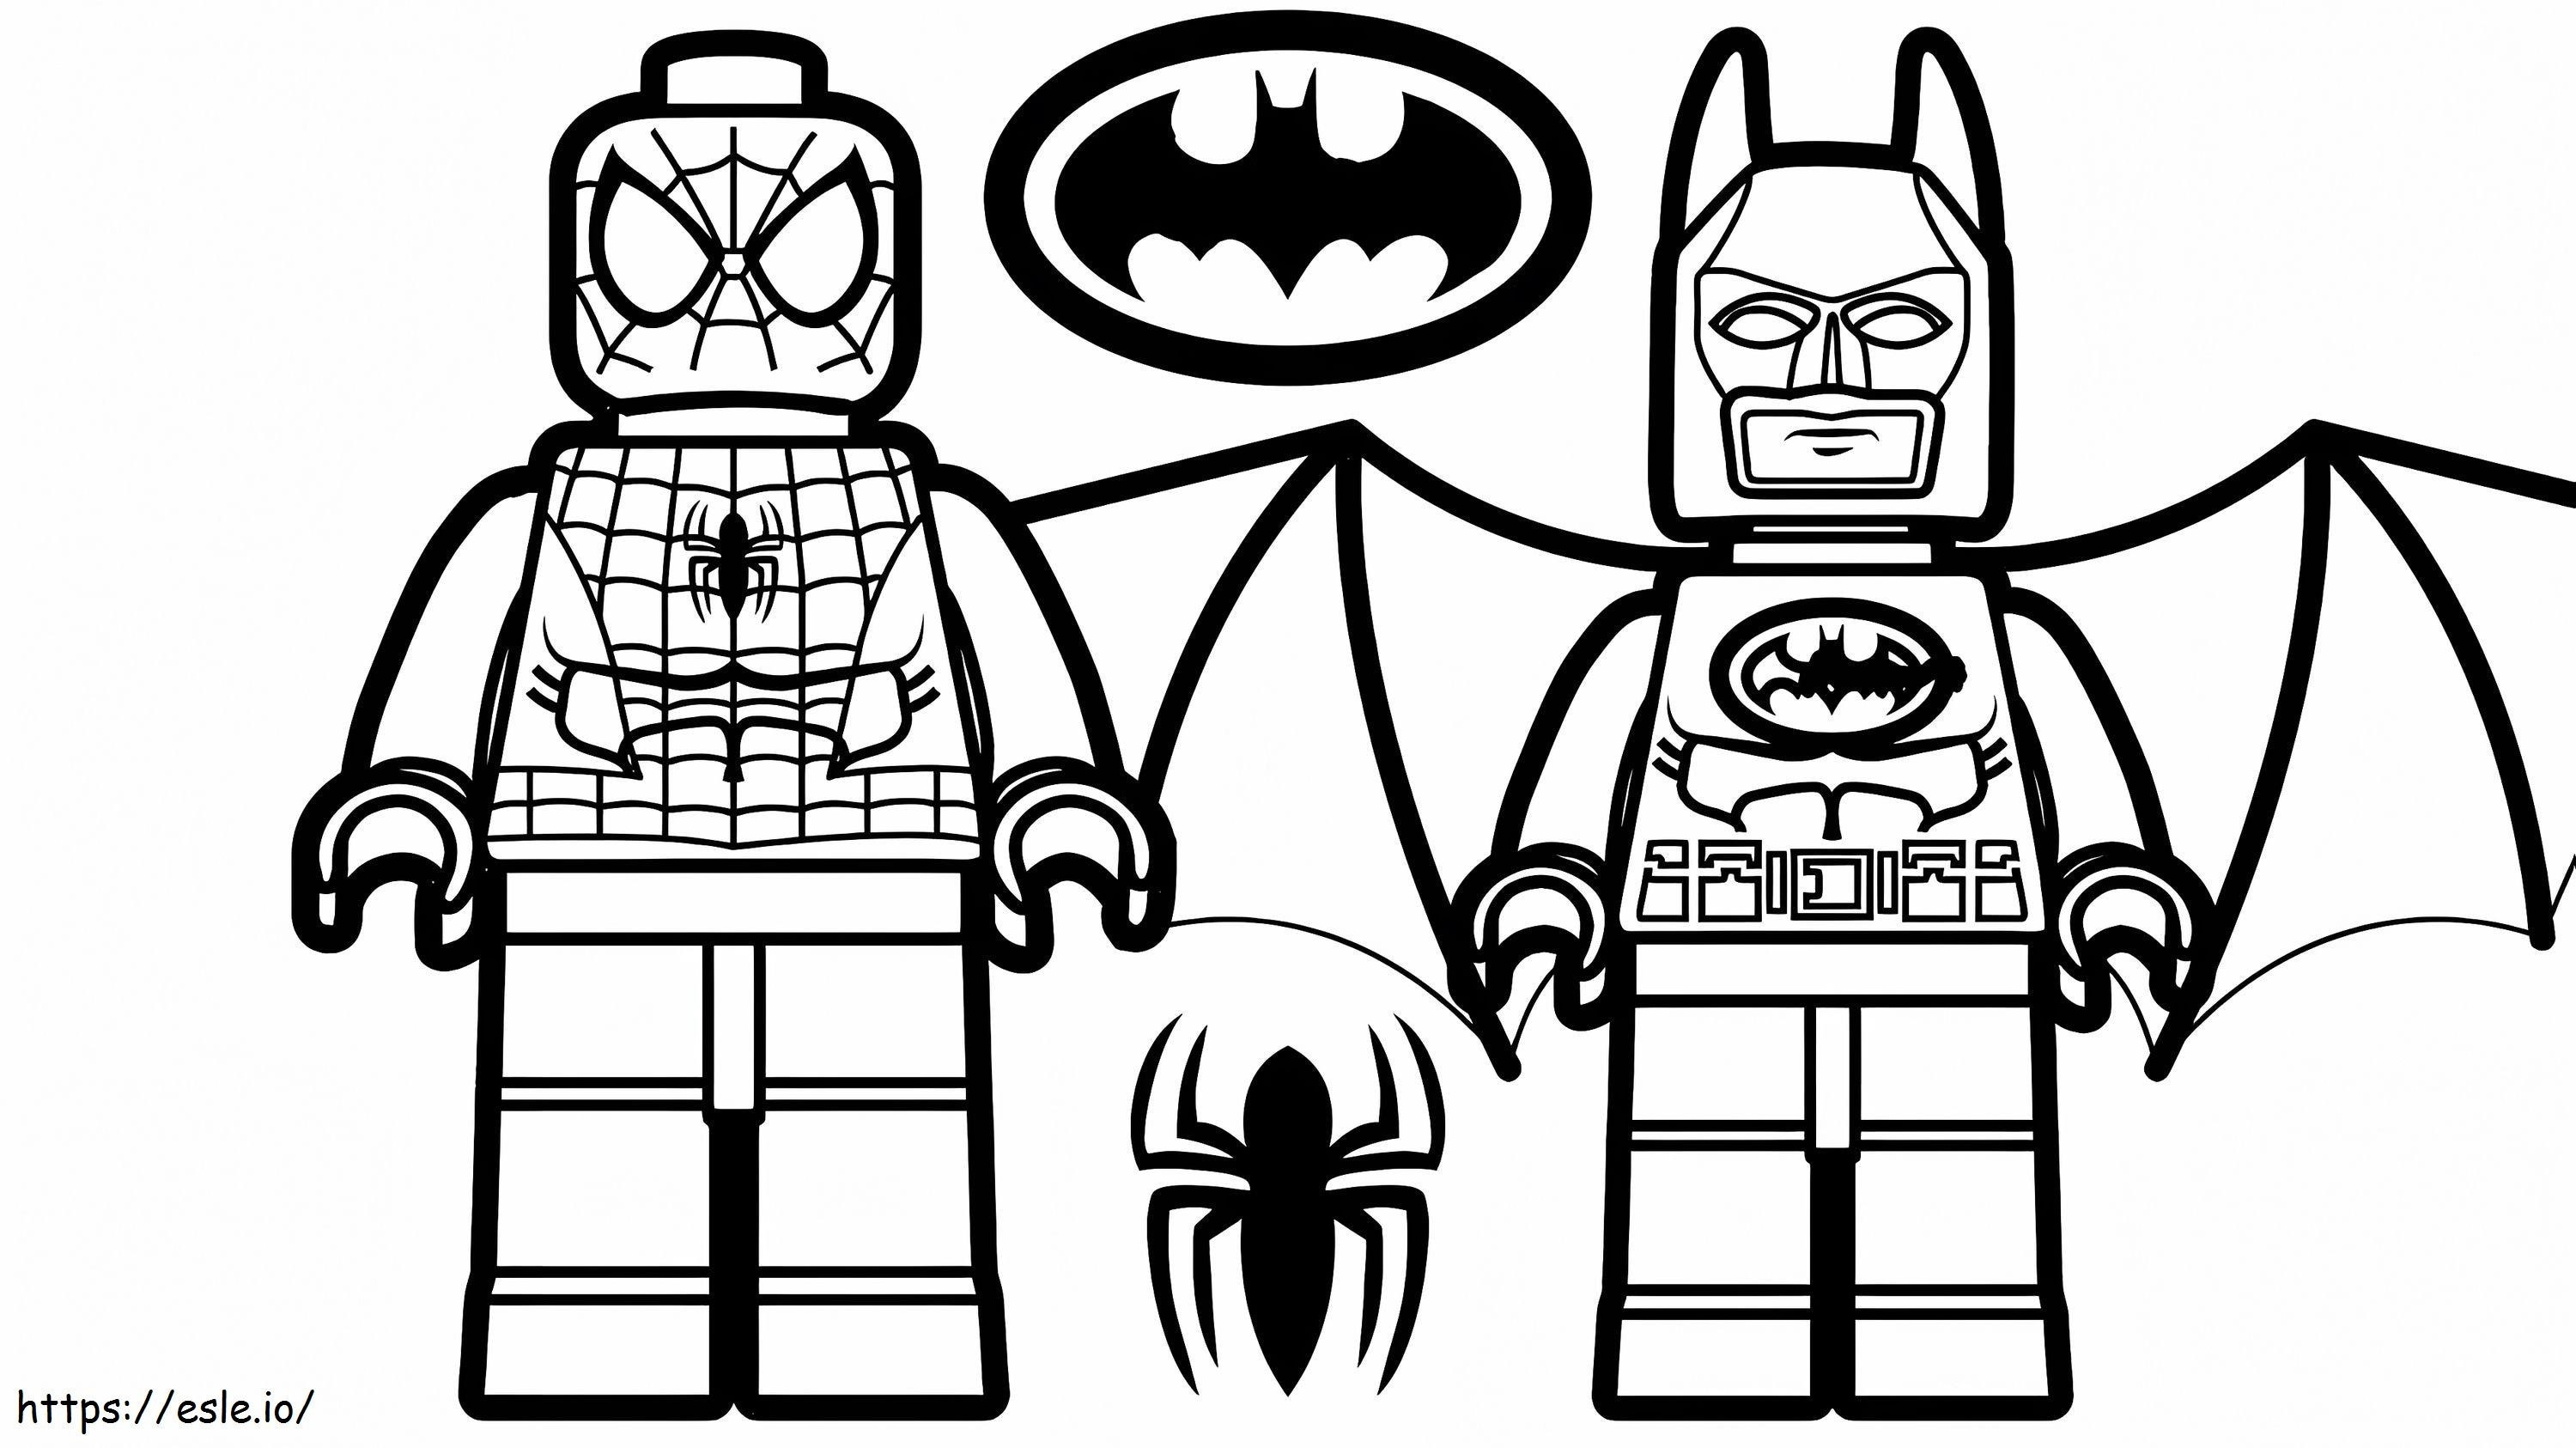 1532141570 Lego Spiderman Y Lego Batman A4 E1600348956736 para colorear